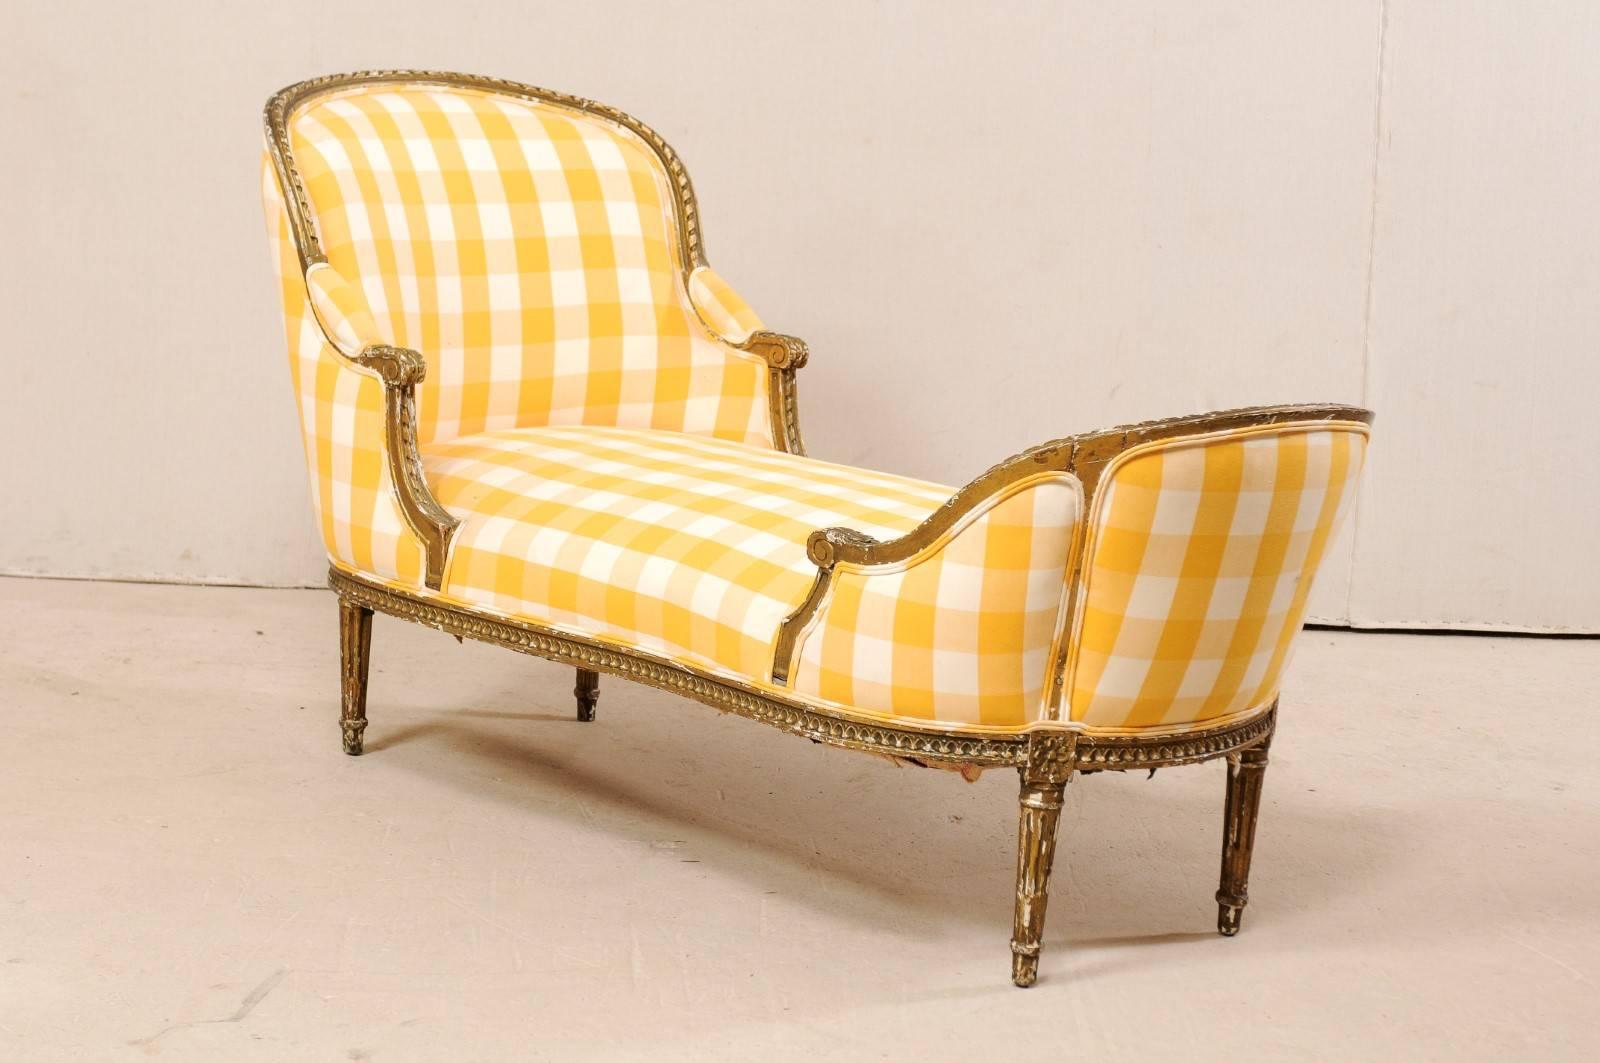 Chaise longue française de style Louis XVI datant du tournant des XIXe et XXe siècles. Cette ancienne chaise Duchesse en Bateau de France, de style Louis XVI, présente des moulures en ruban et en ovoïde, des articulations à volutes et des rosettes